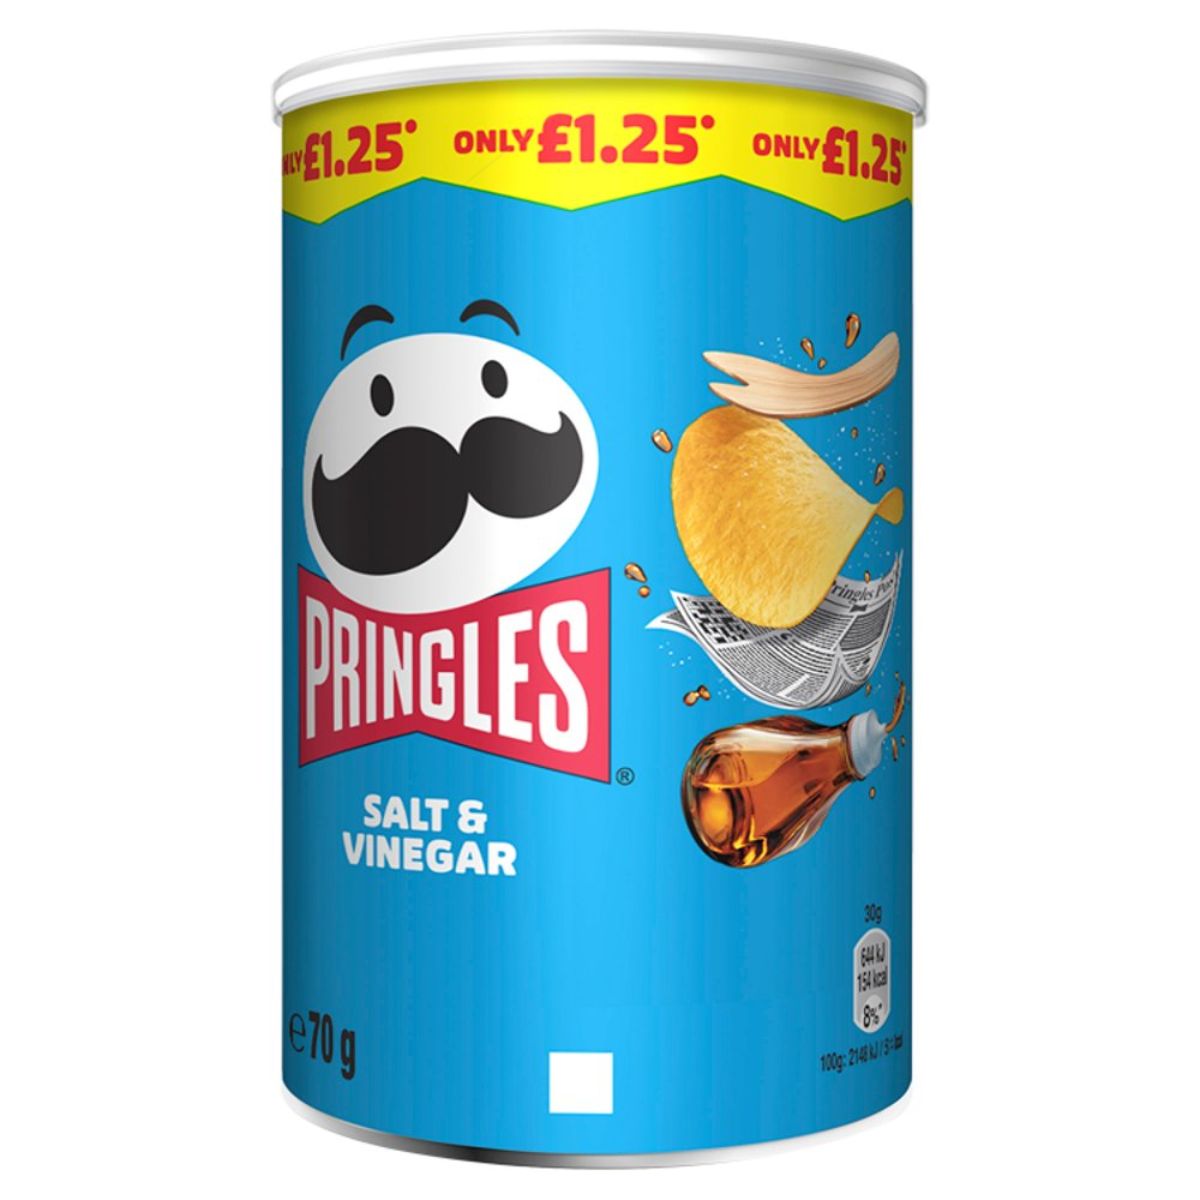 Pringles - Salt & Vinegar - 70g chips.